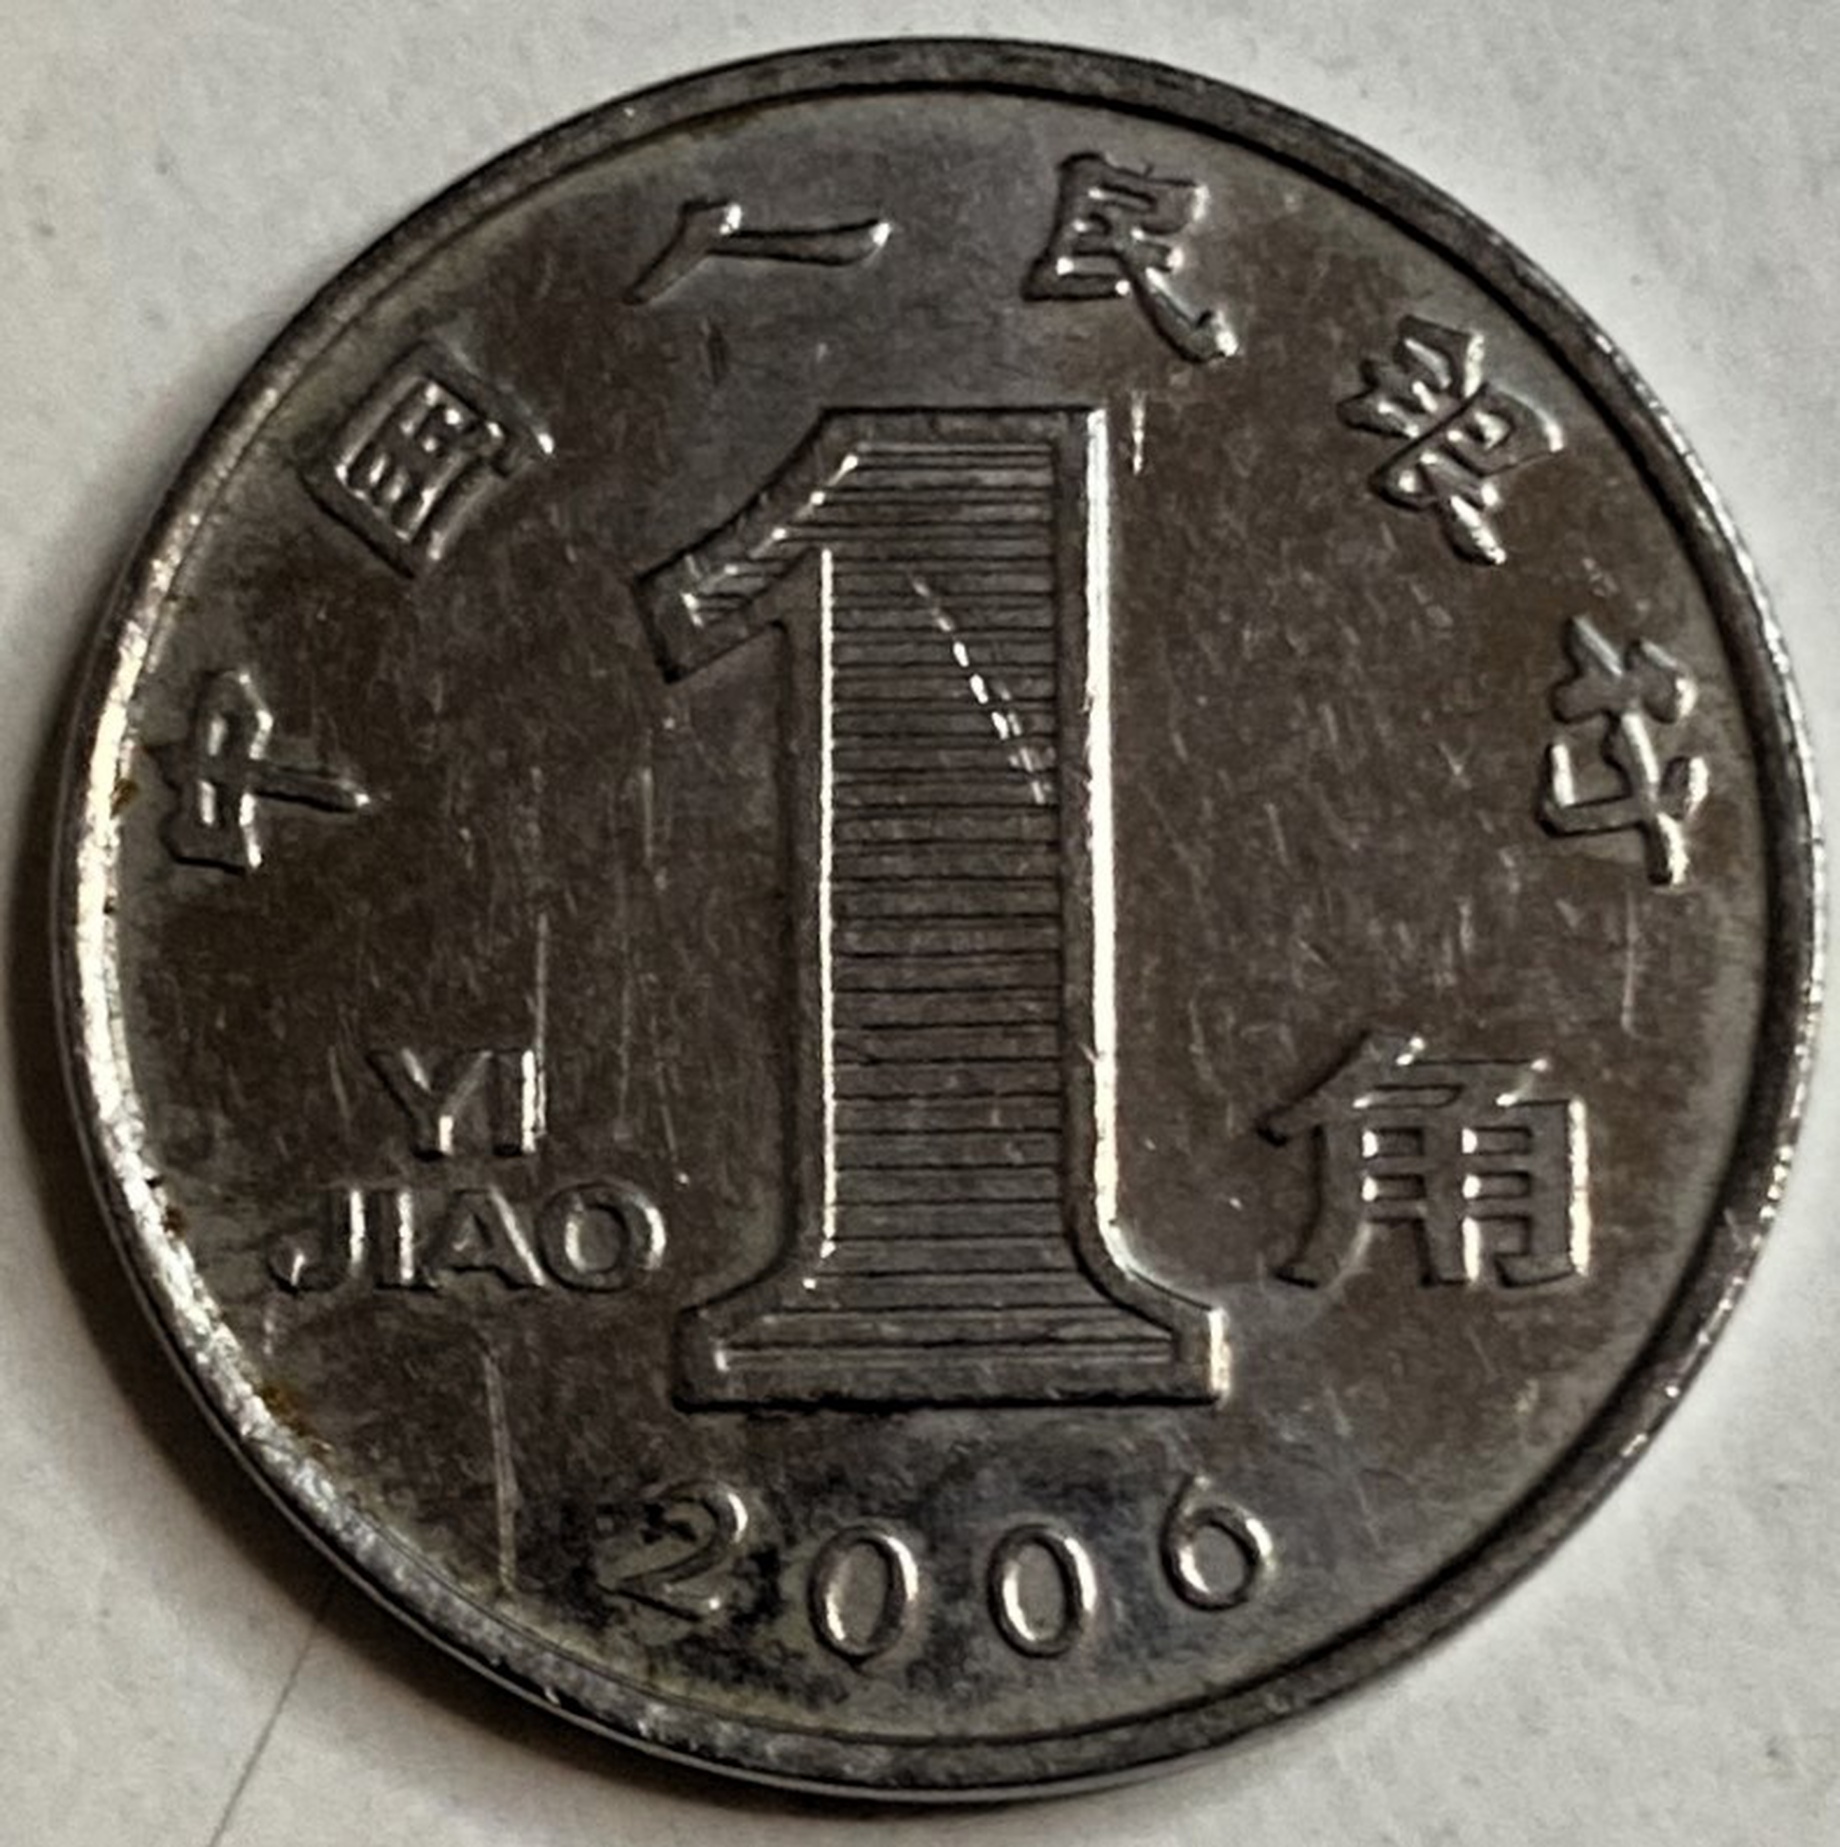 Иностранная монета 1 юань Китай 2006 год